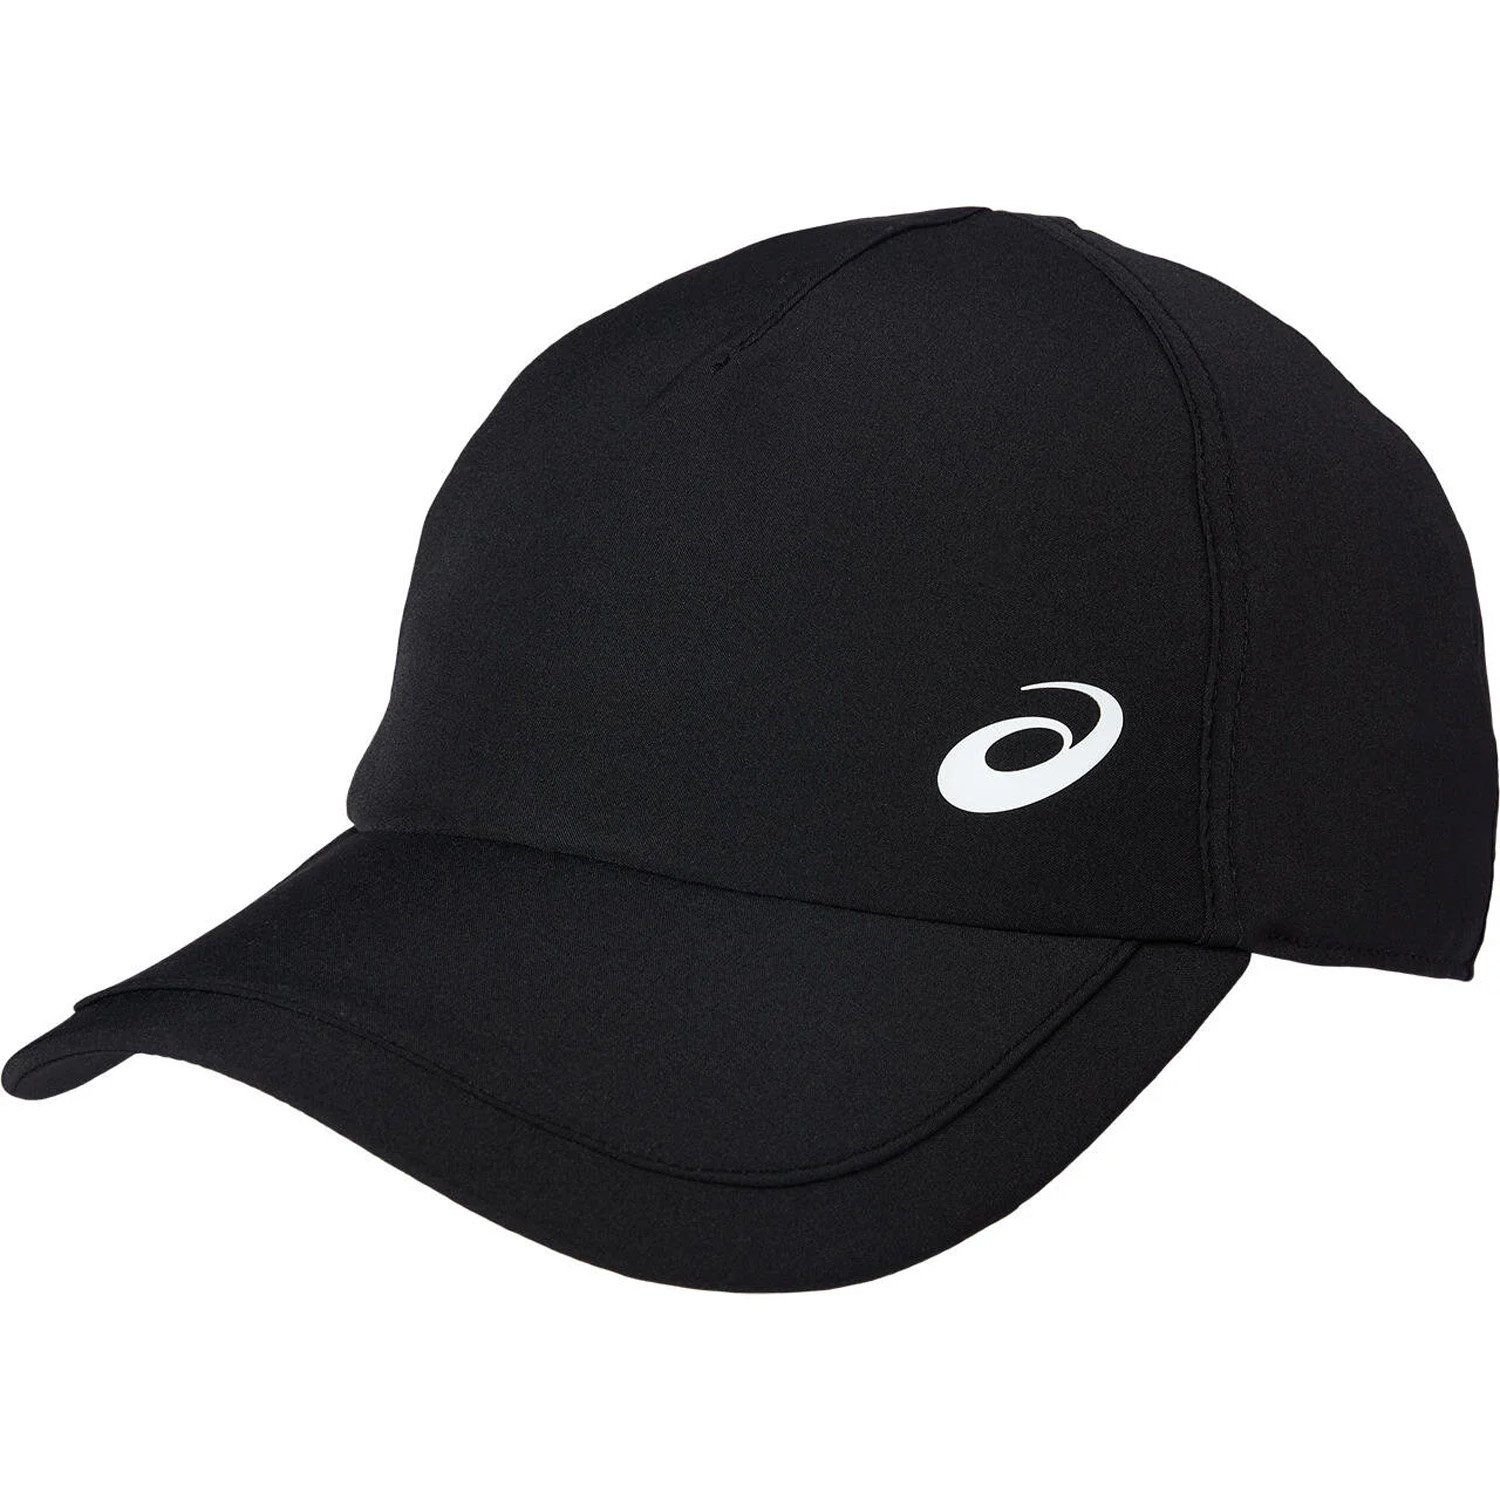 Asics PF Cap Şapka - Siyah - 1